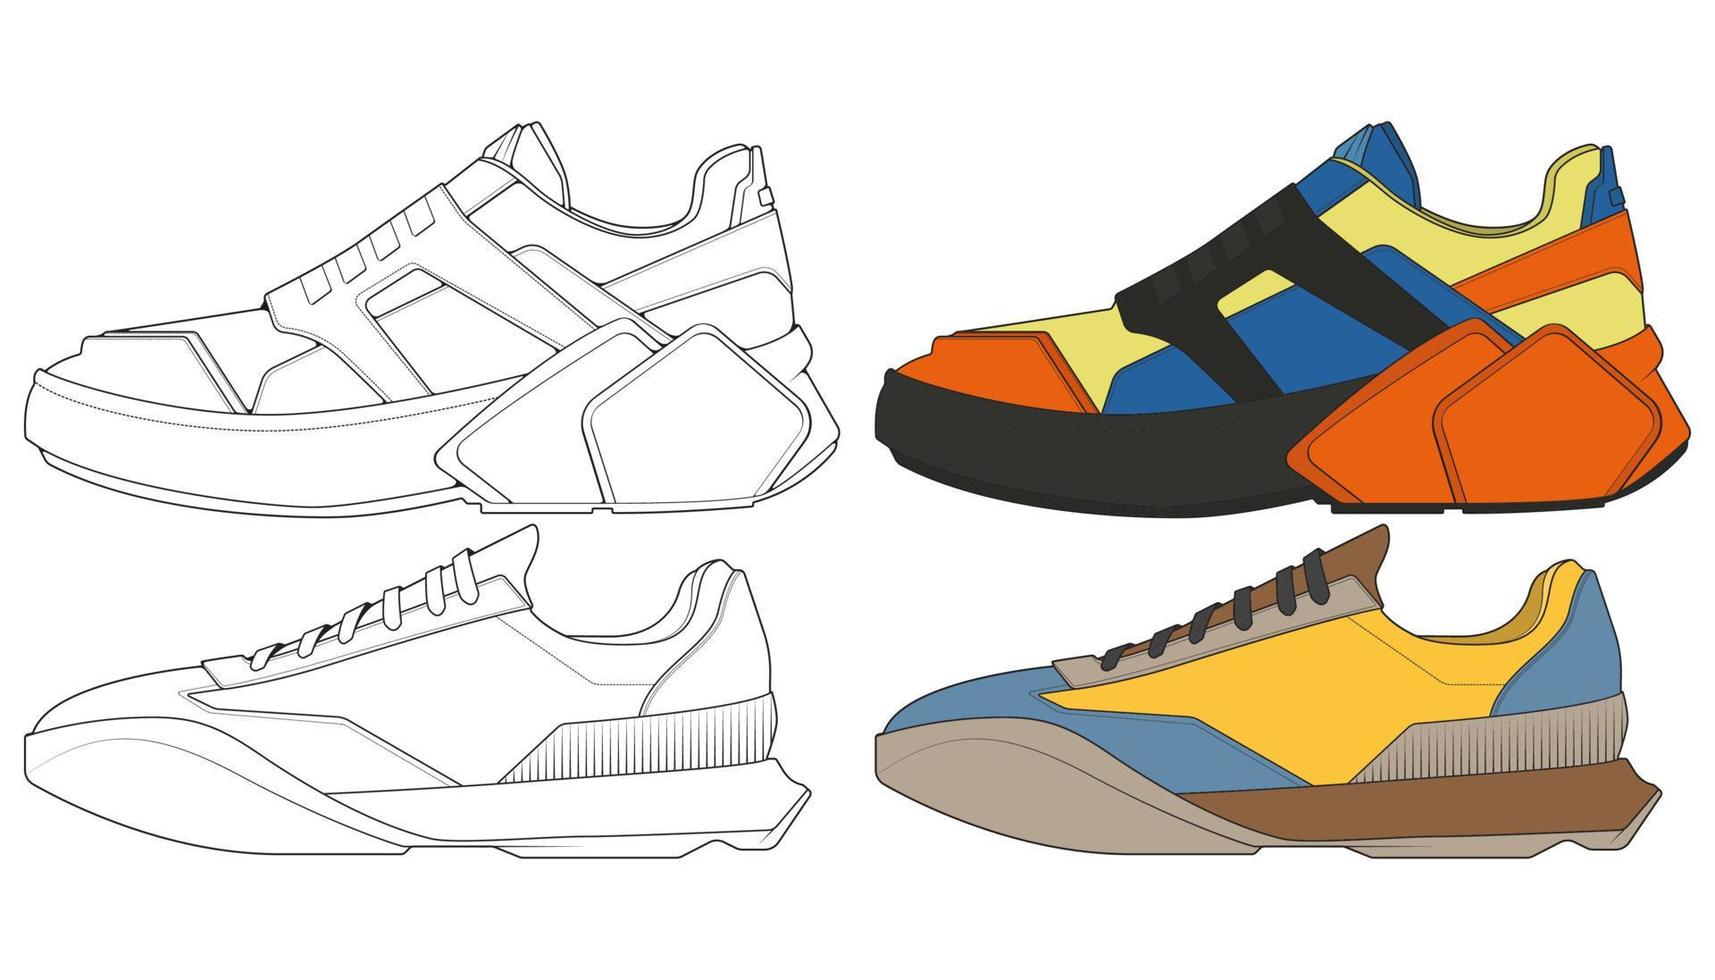 detonar sapato de tênis. conceito. projeto plano. ilustração vetorial. tênis em estilo plano. vetor